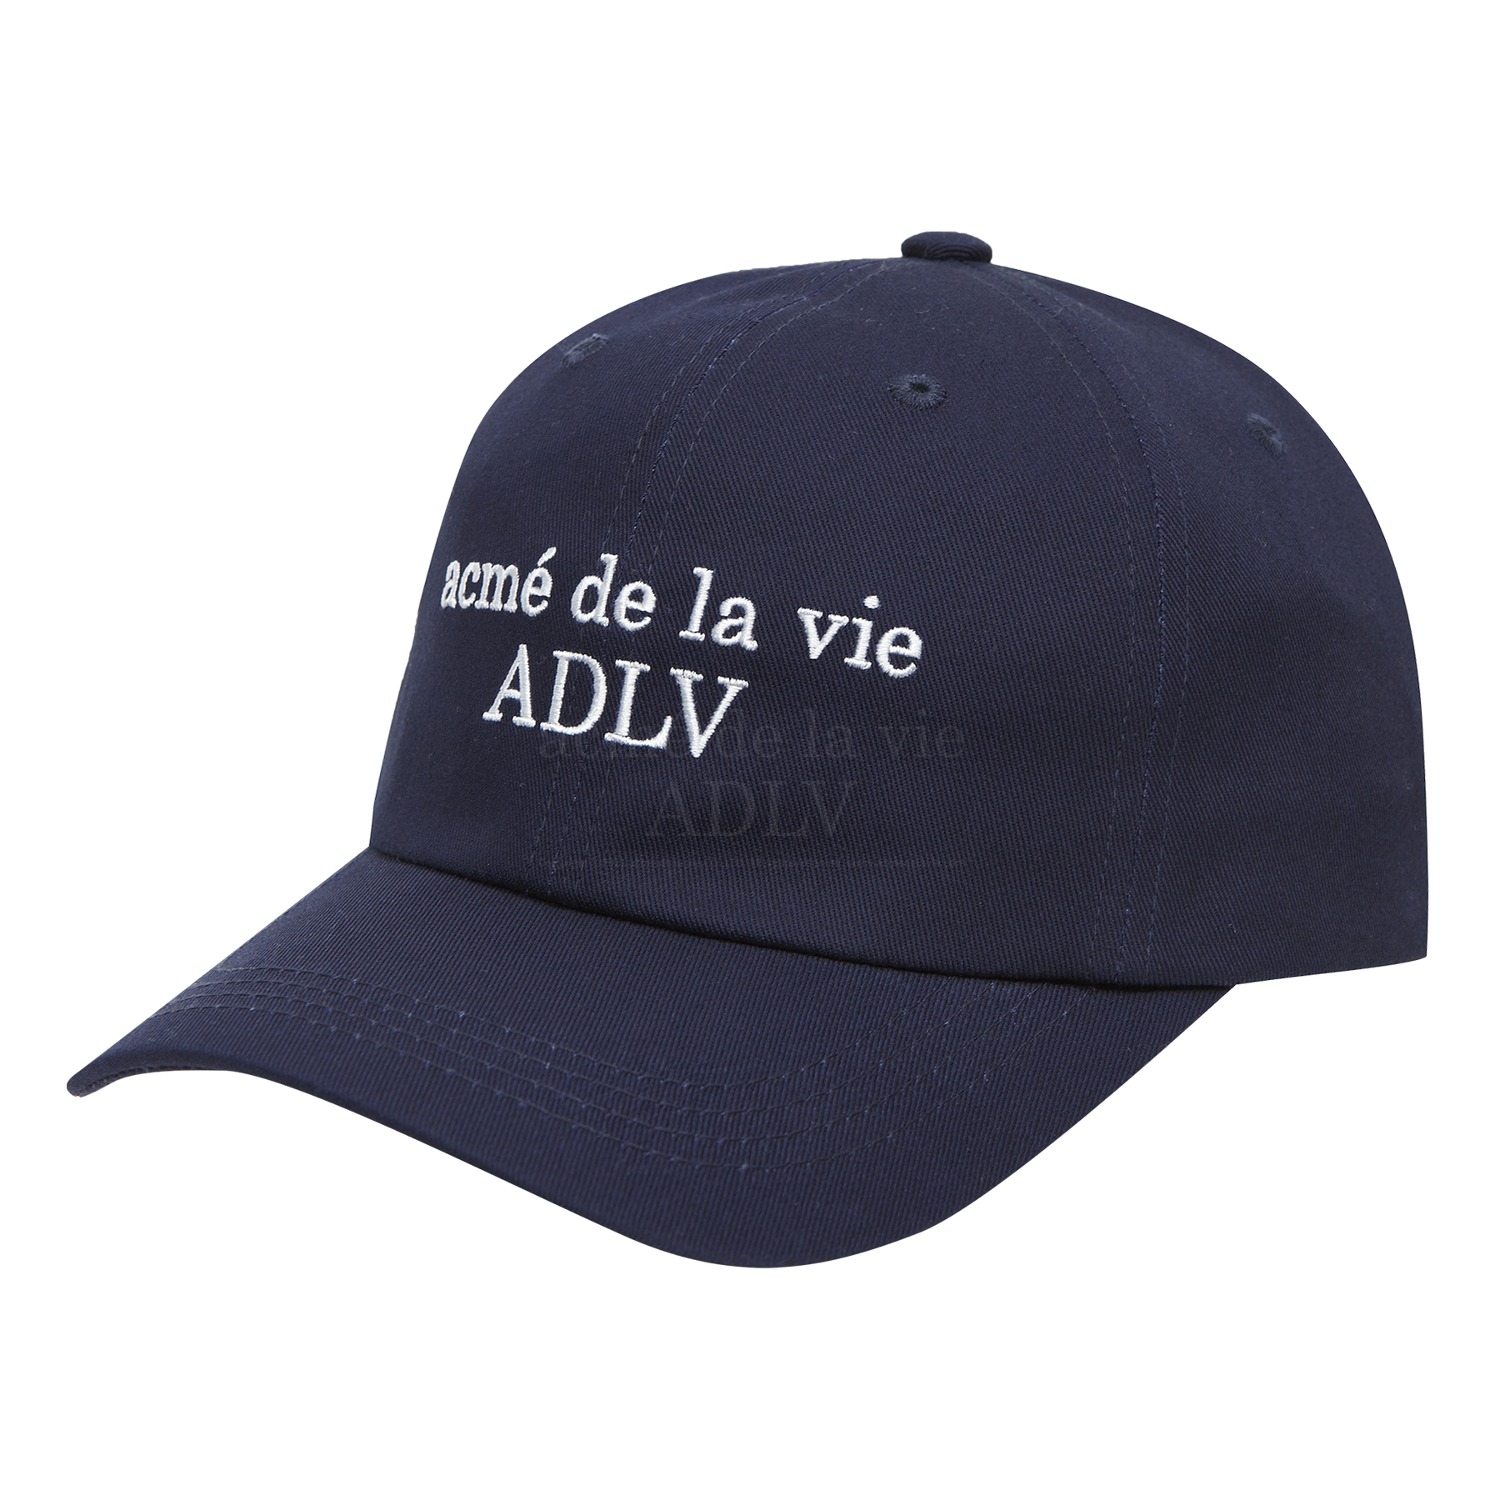 [아크메드라비] ADLV BASIC BALL CAP NAVY